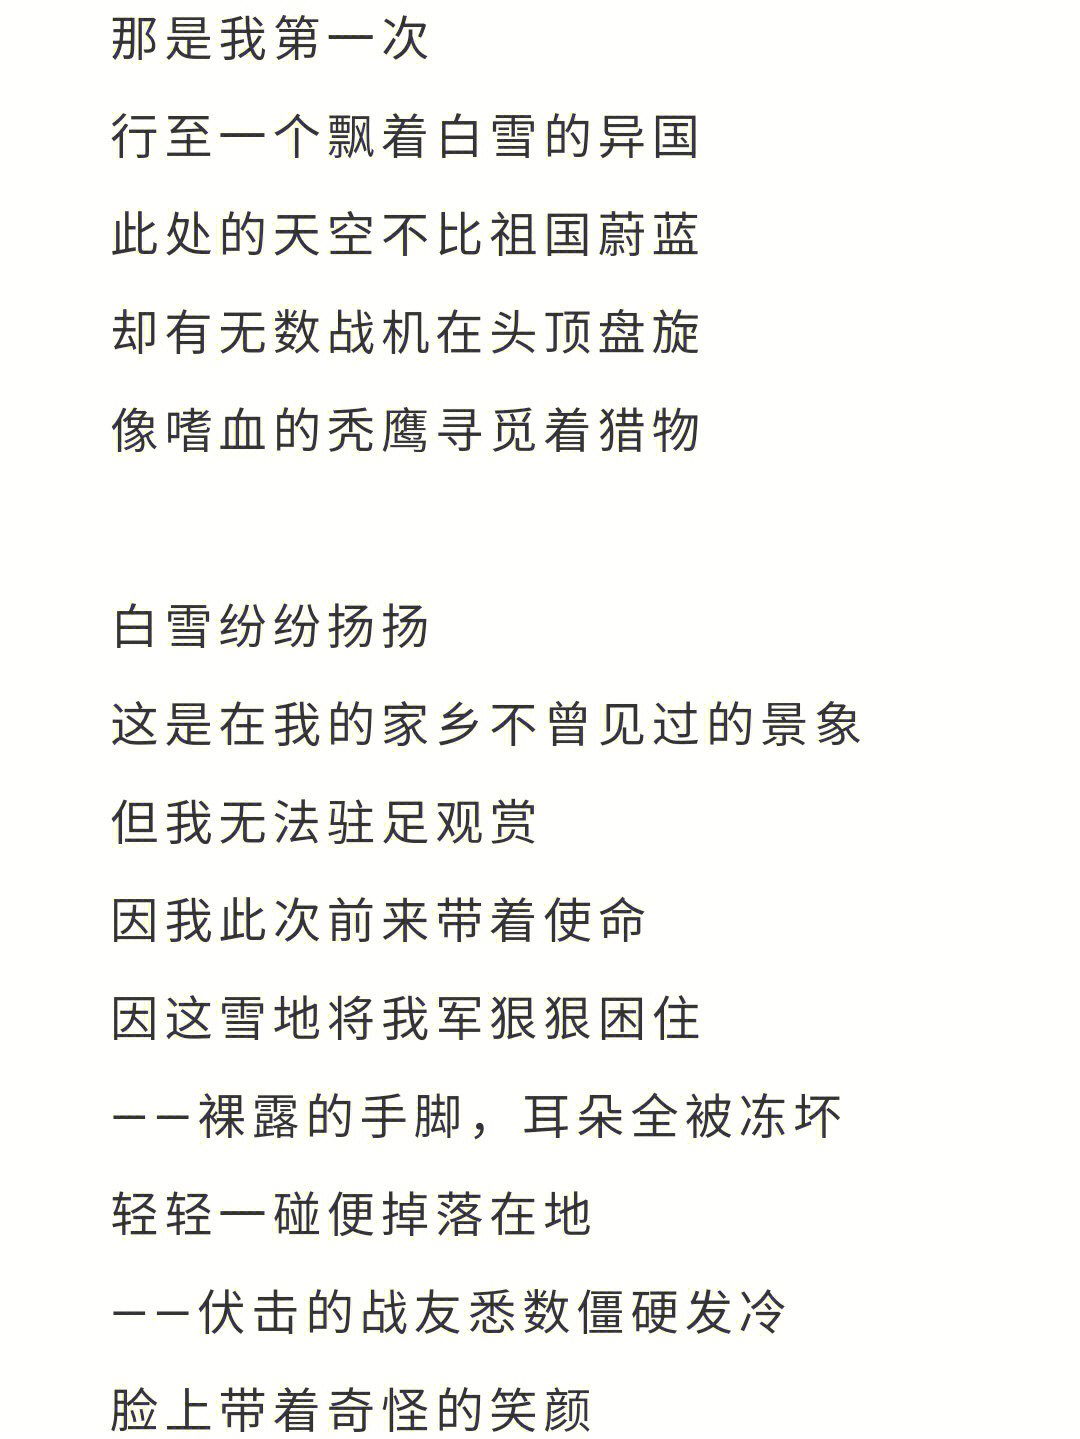 原创诗歌致敬中国人民志愿军出征71周年